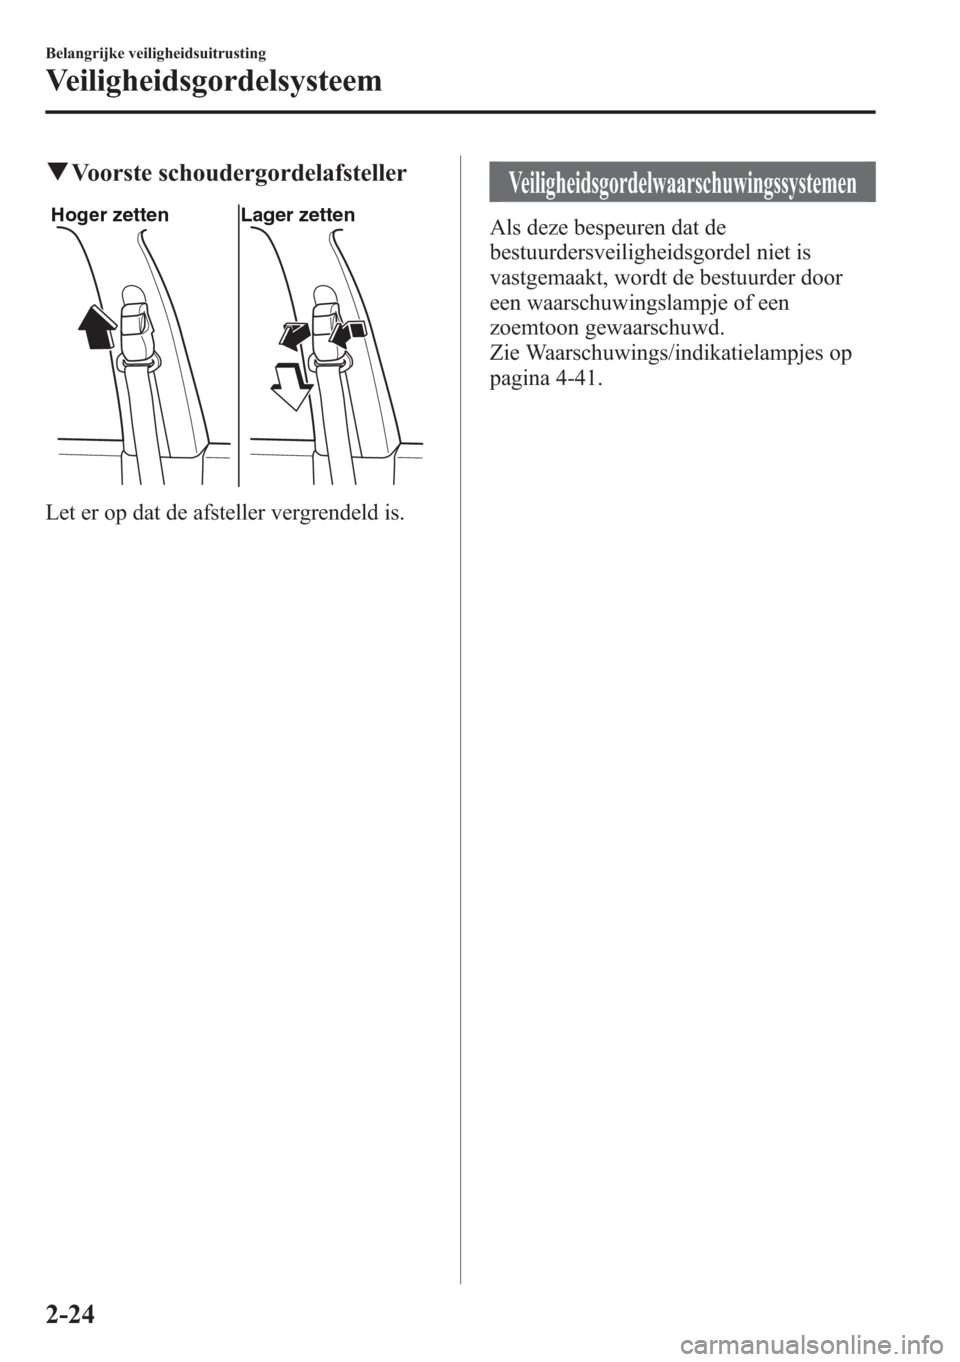 MAZDA MODEL CX-5 2013  Handleiding (in Dutch) qVoorste schoudergordelafsteller
Hoger zetten Lager zetten
Let er op dat de afsteller vergrendeld is.
Veiligheidsgordelwaarschuwingssystemen
Als deze bespeuren dat de
bestuurdersveiligheidsgordel niet